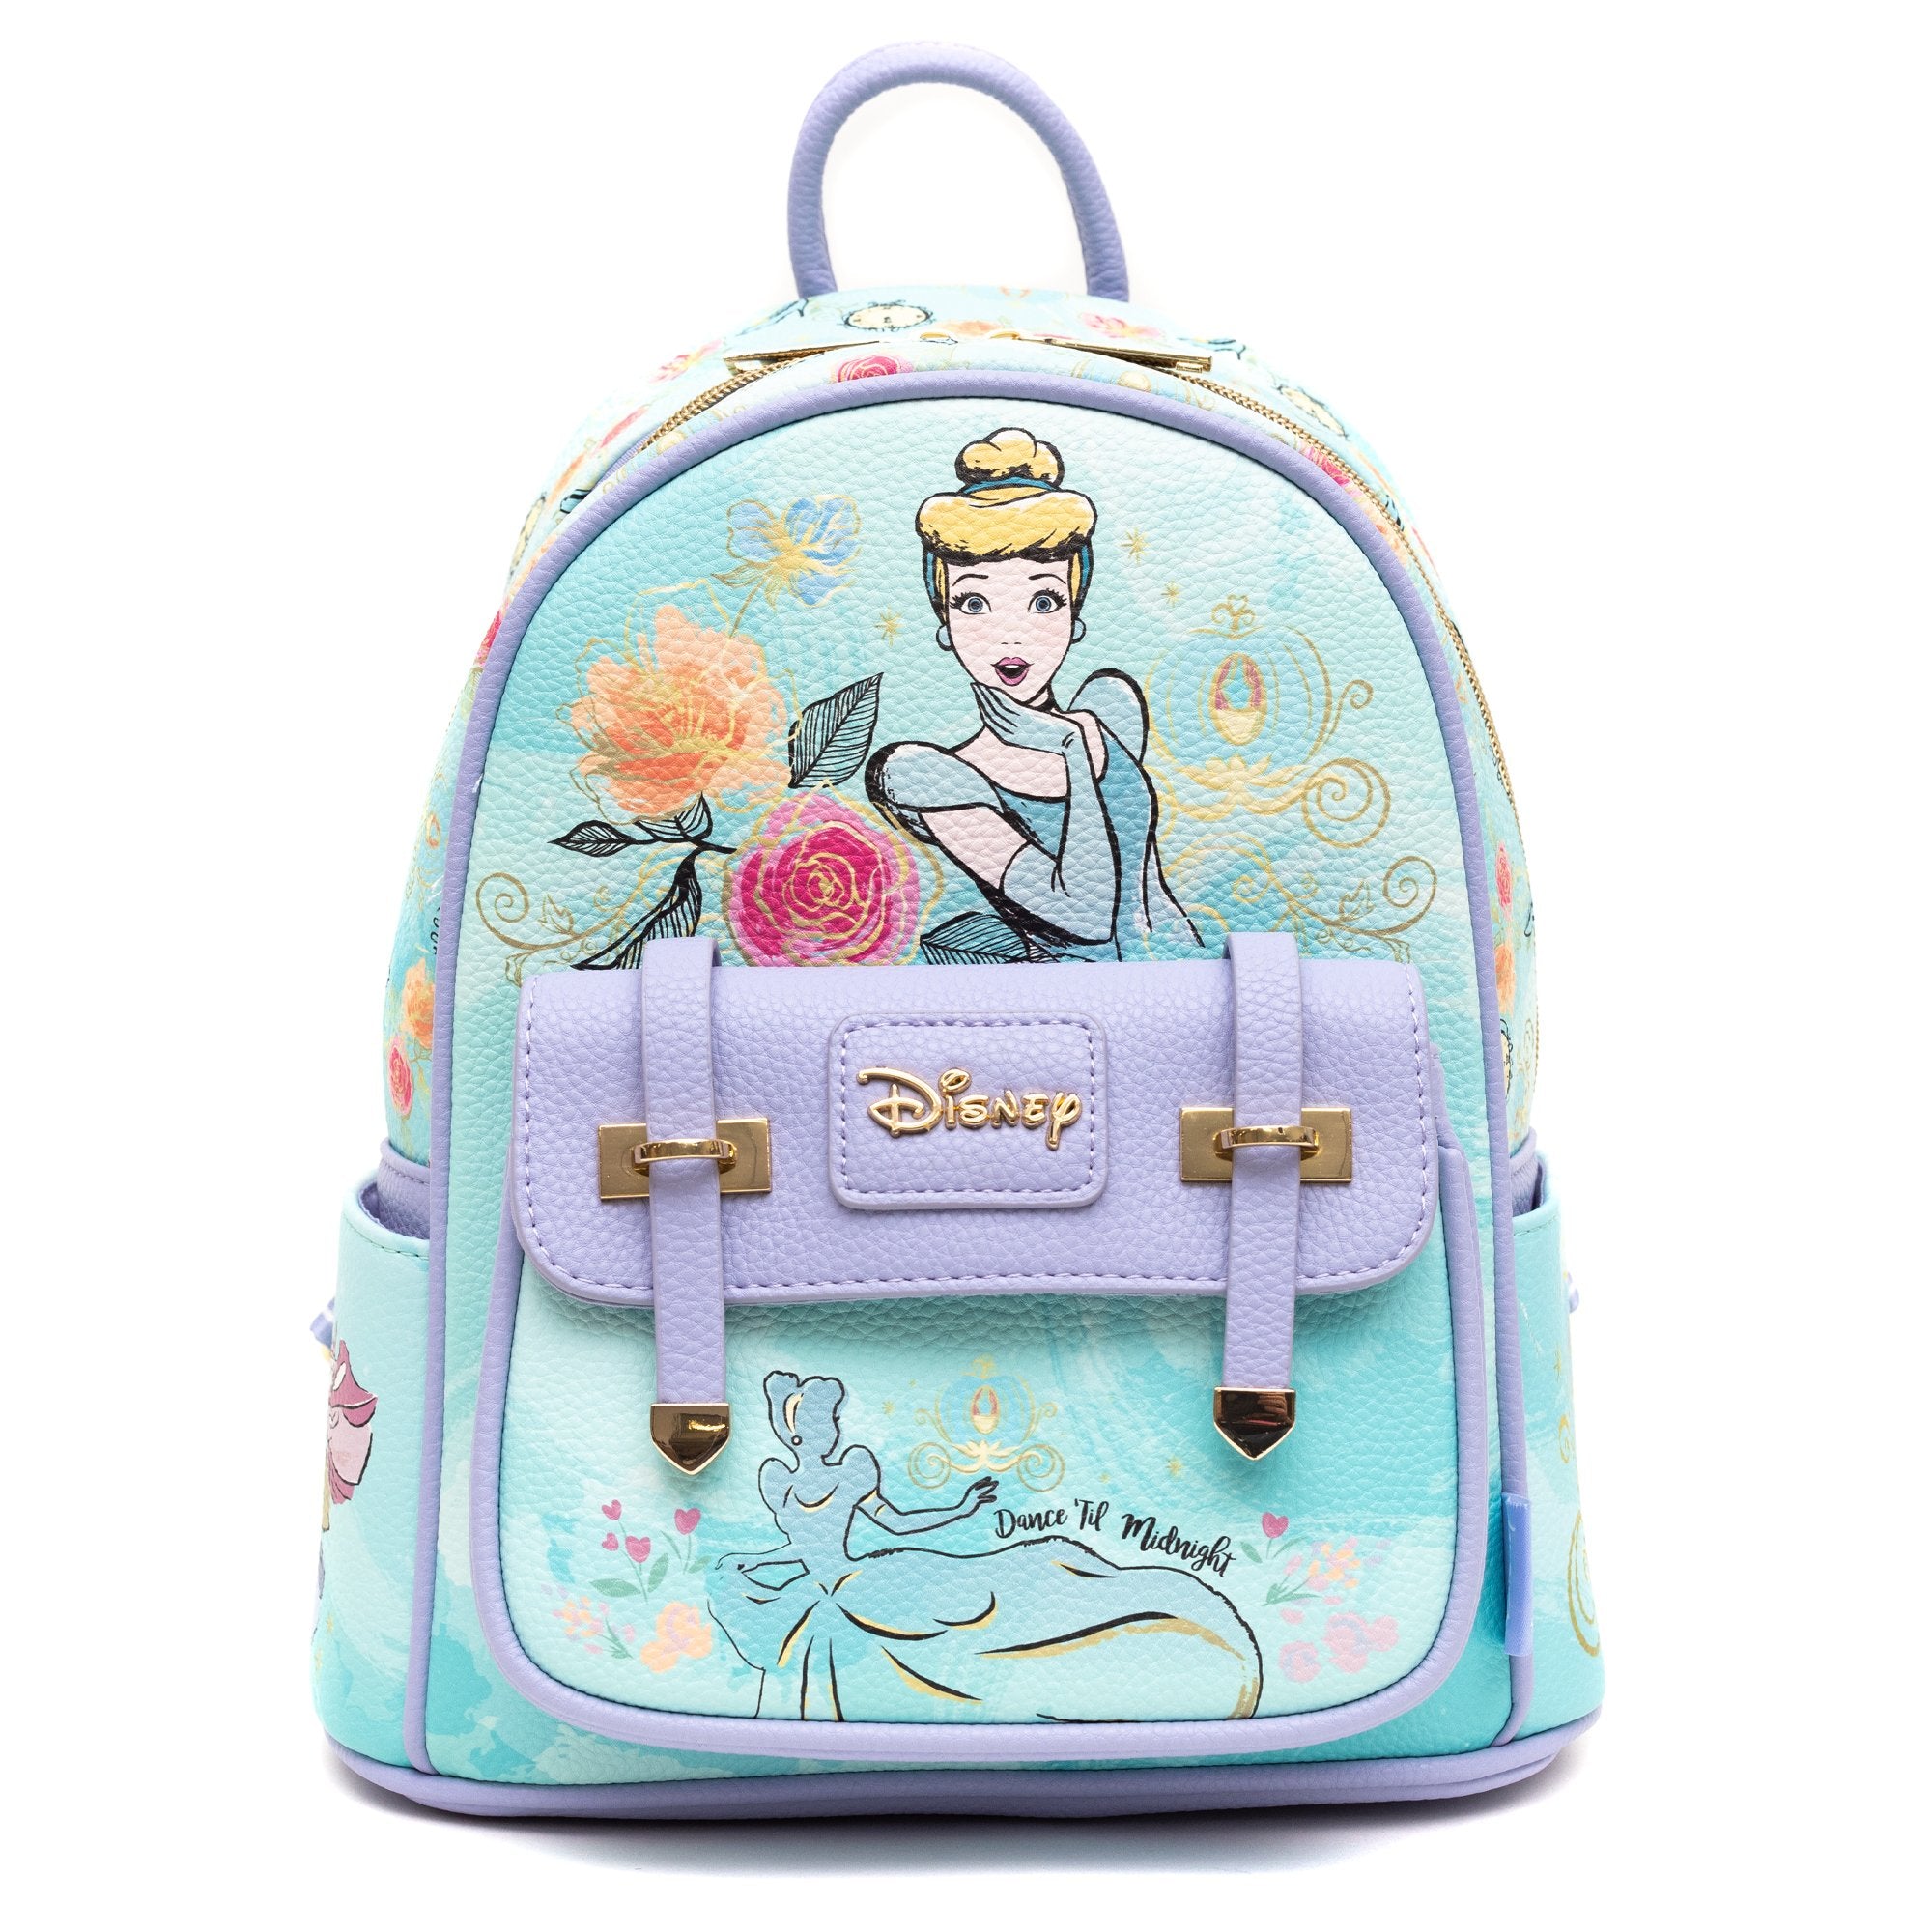 Loungefly Disney Sleeping Beauty Double Zip Backpack